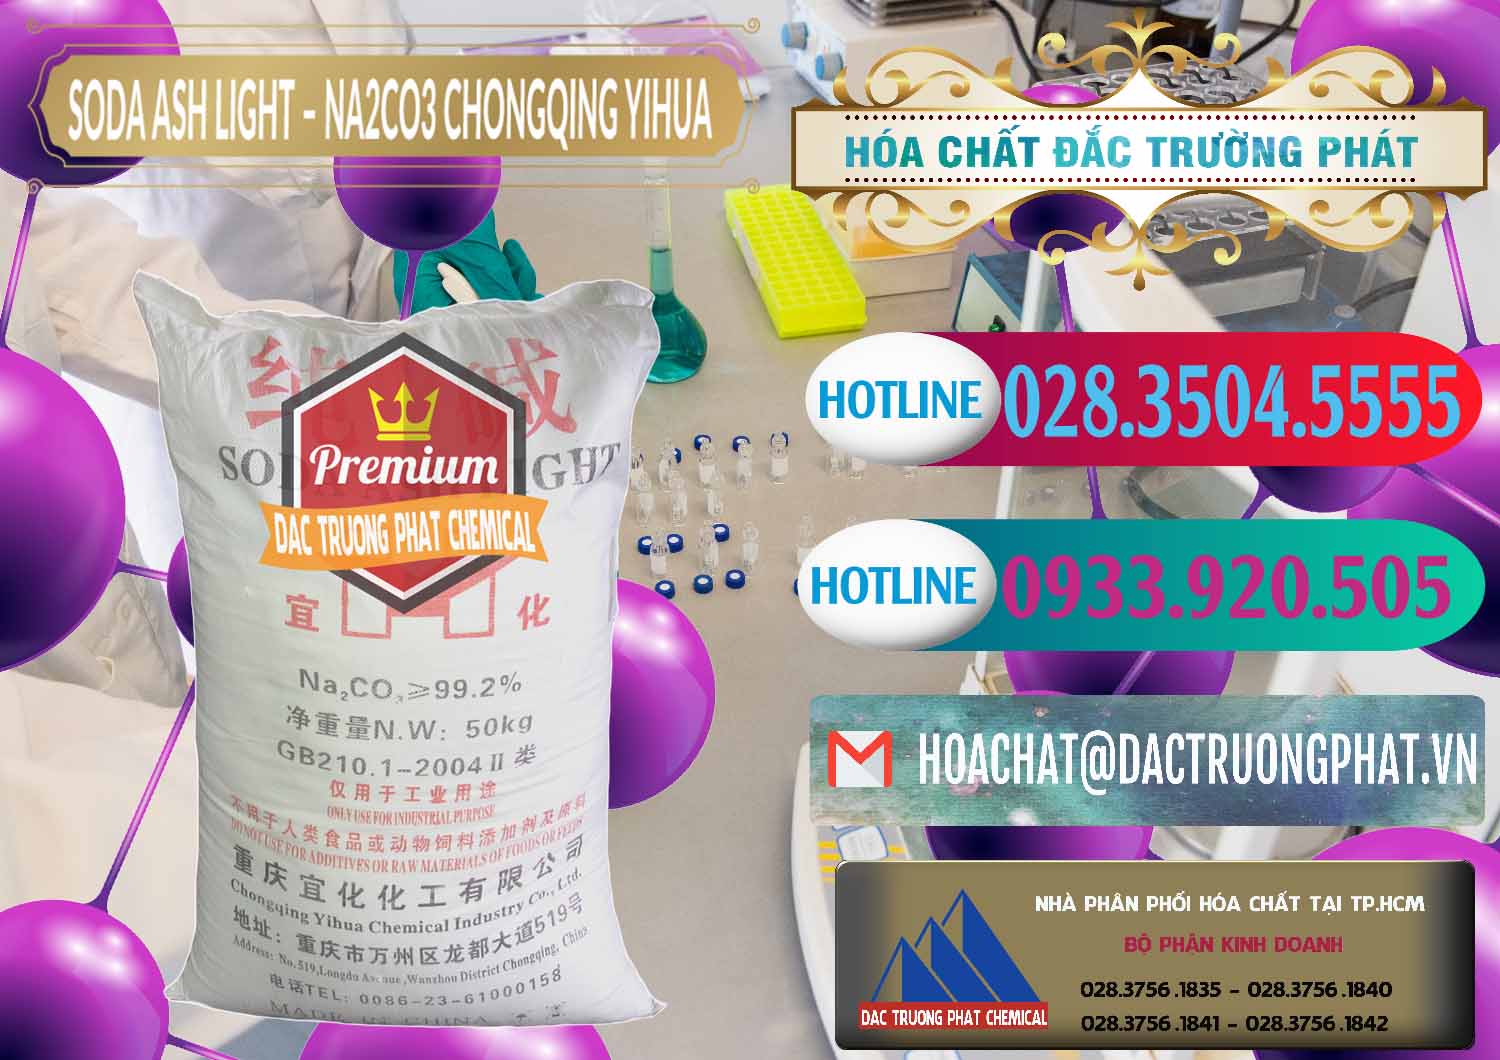 Cty cung cấp ( bán ) Soda Ash Light - NA2CO3 Chongqing Yihua Trung Quốc China - 0129 - Nơi chuyên kinh doanh ( phân phối ) hóa chất tại TP.HCM - truongphat.vn